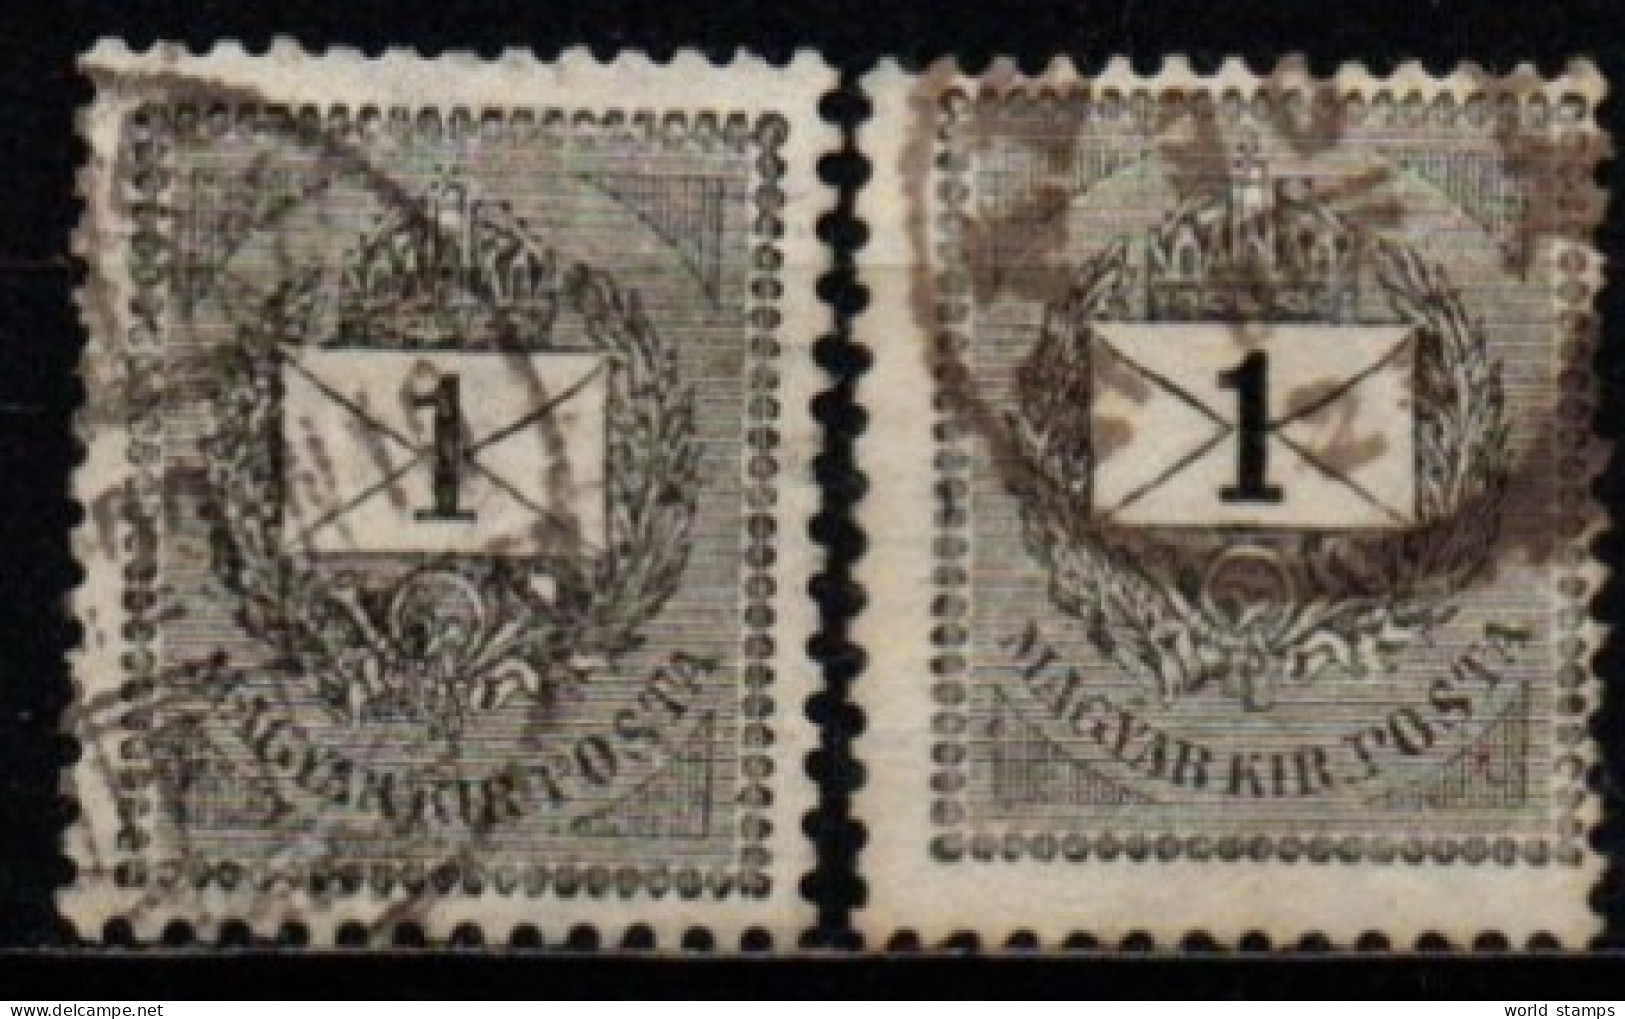 HONGRIE 1898-9 O DENT 12x11.5 - Oblitérés